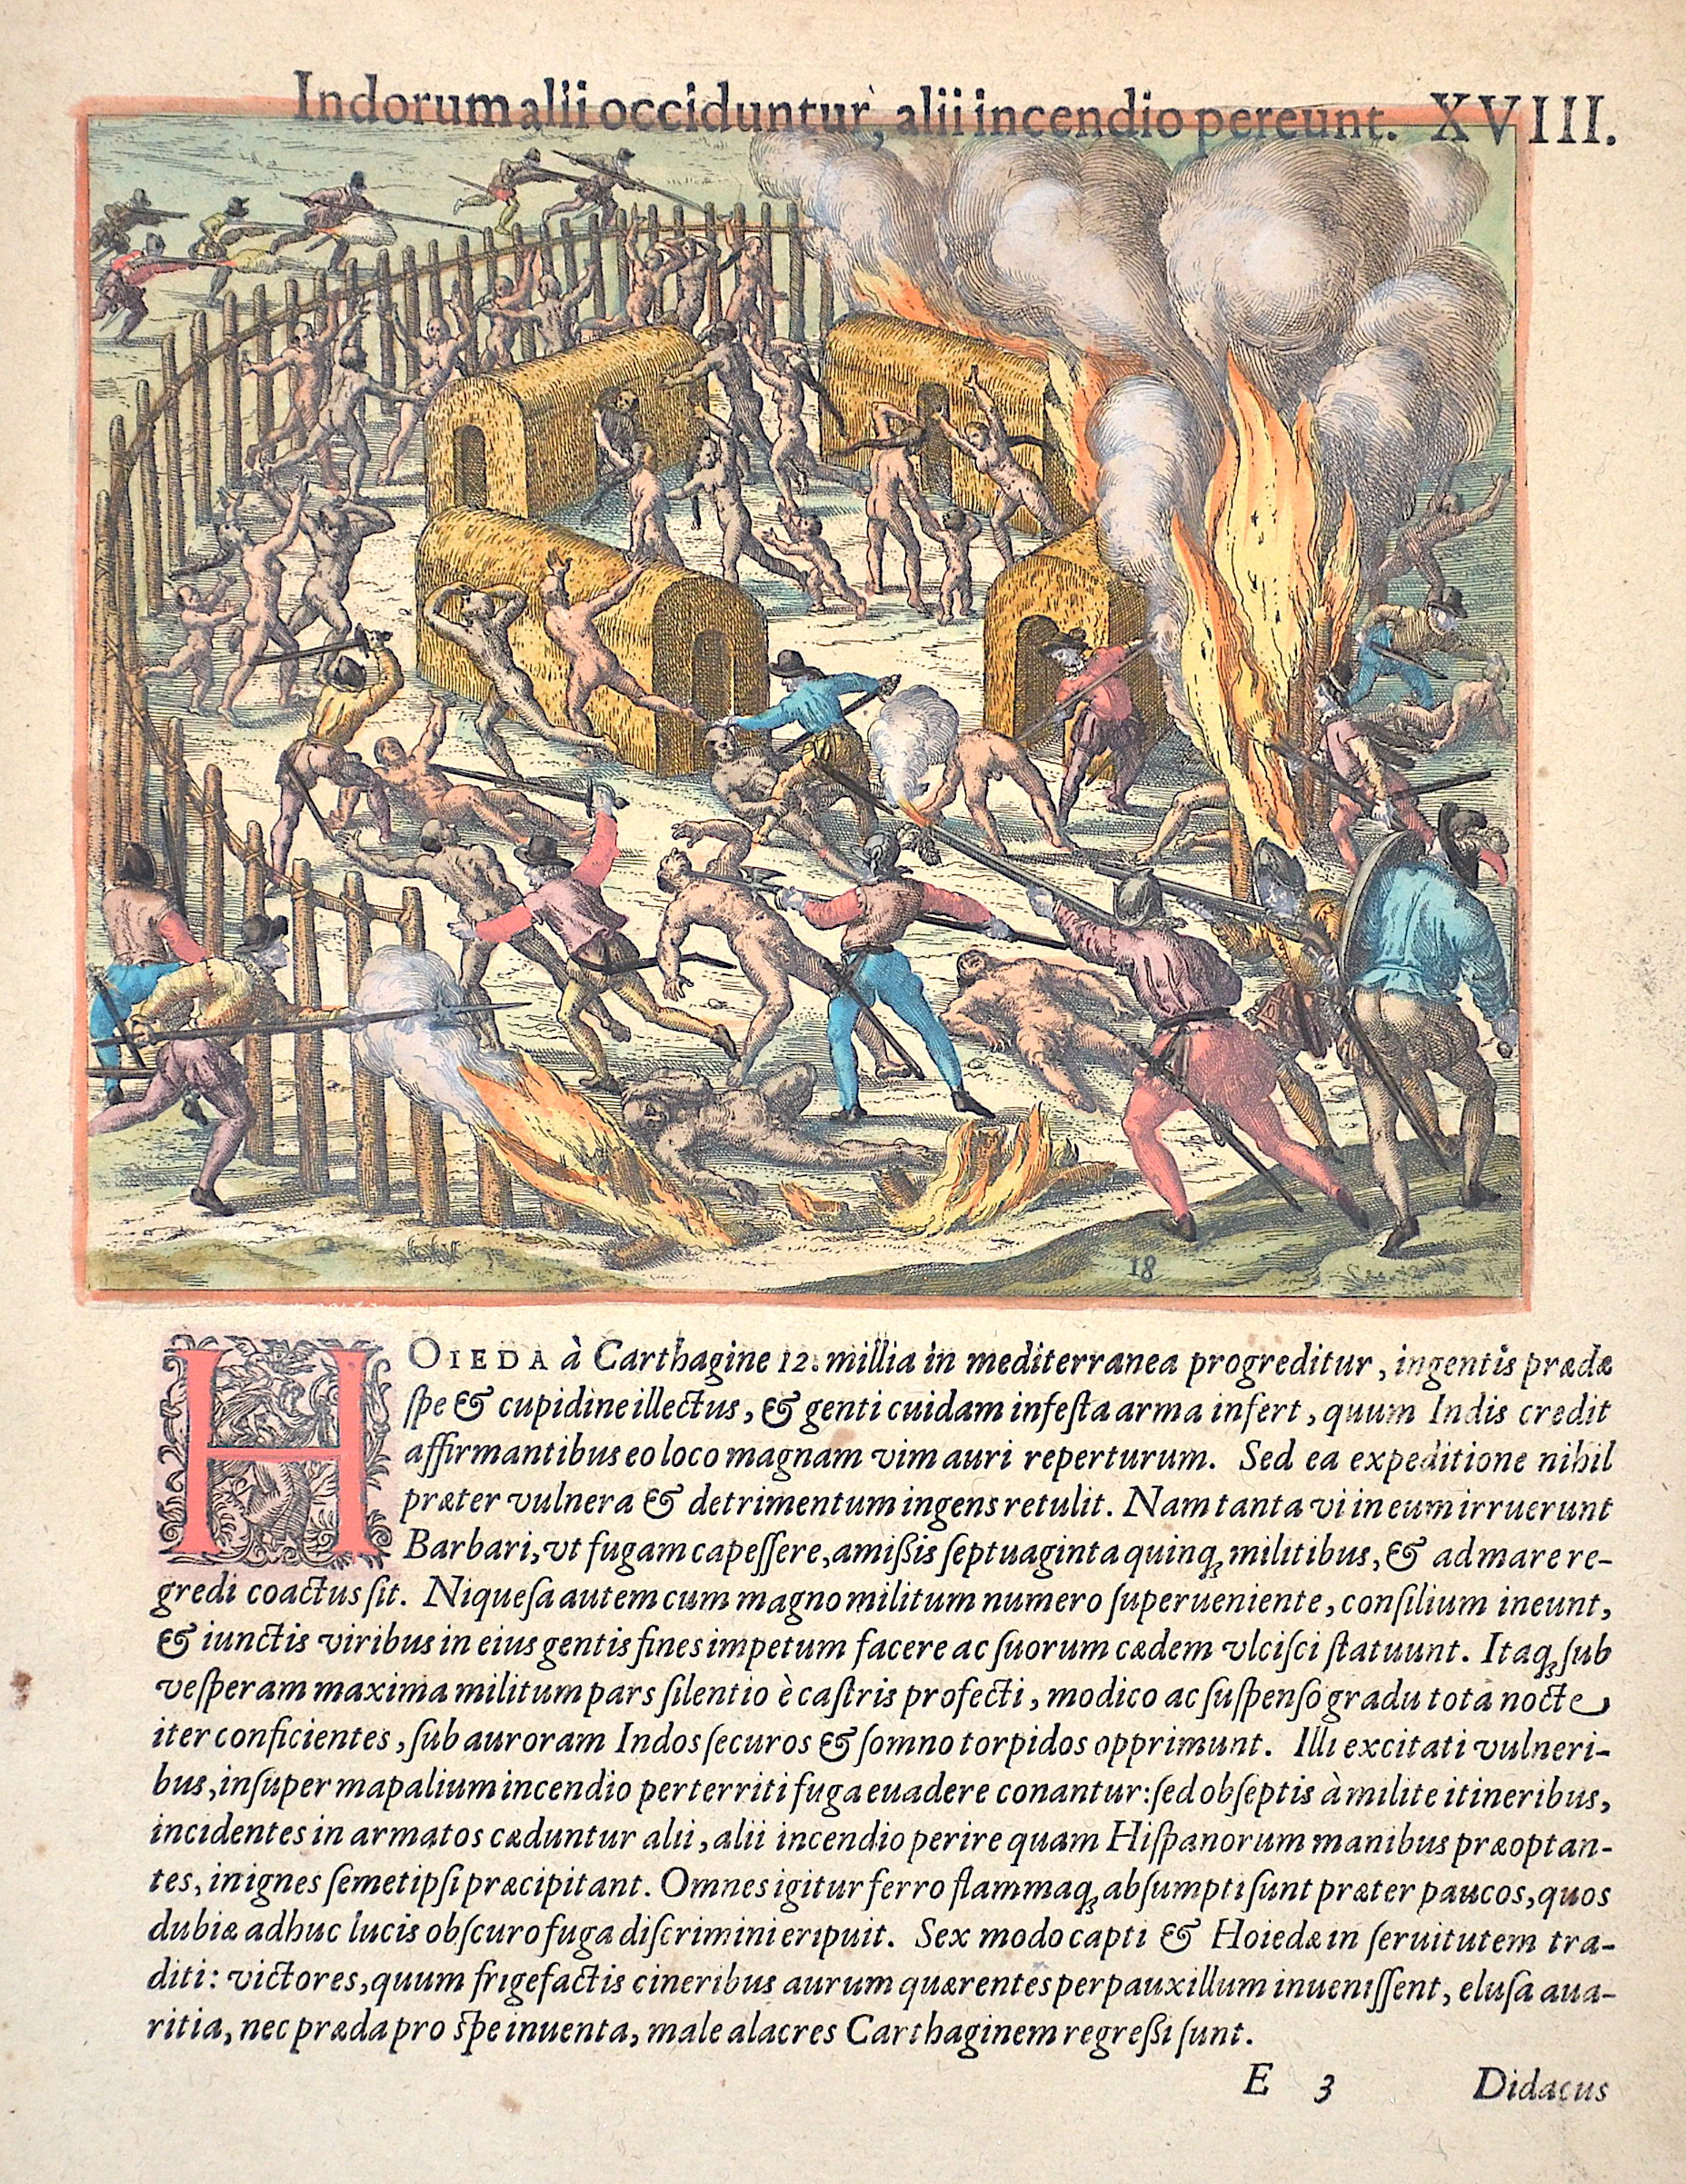 Bry, De - Benzoni Girolam Indorum alii occiduntur, alii incendio pereunt. XVIII.